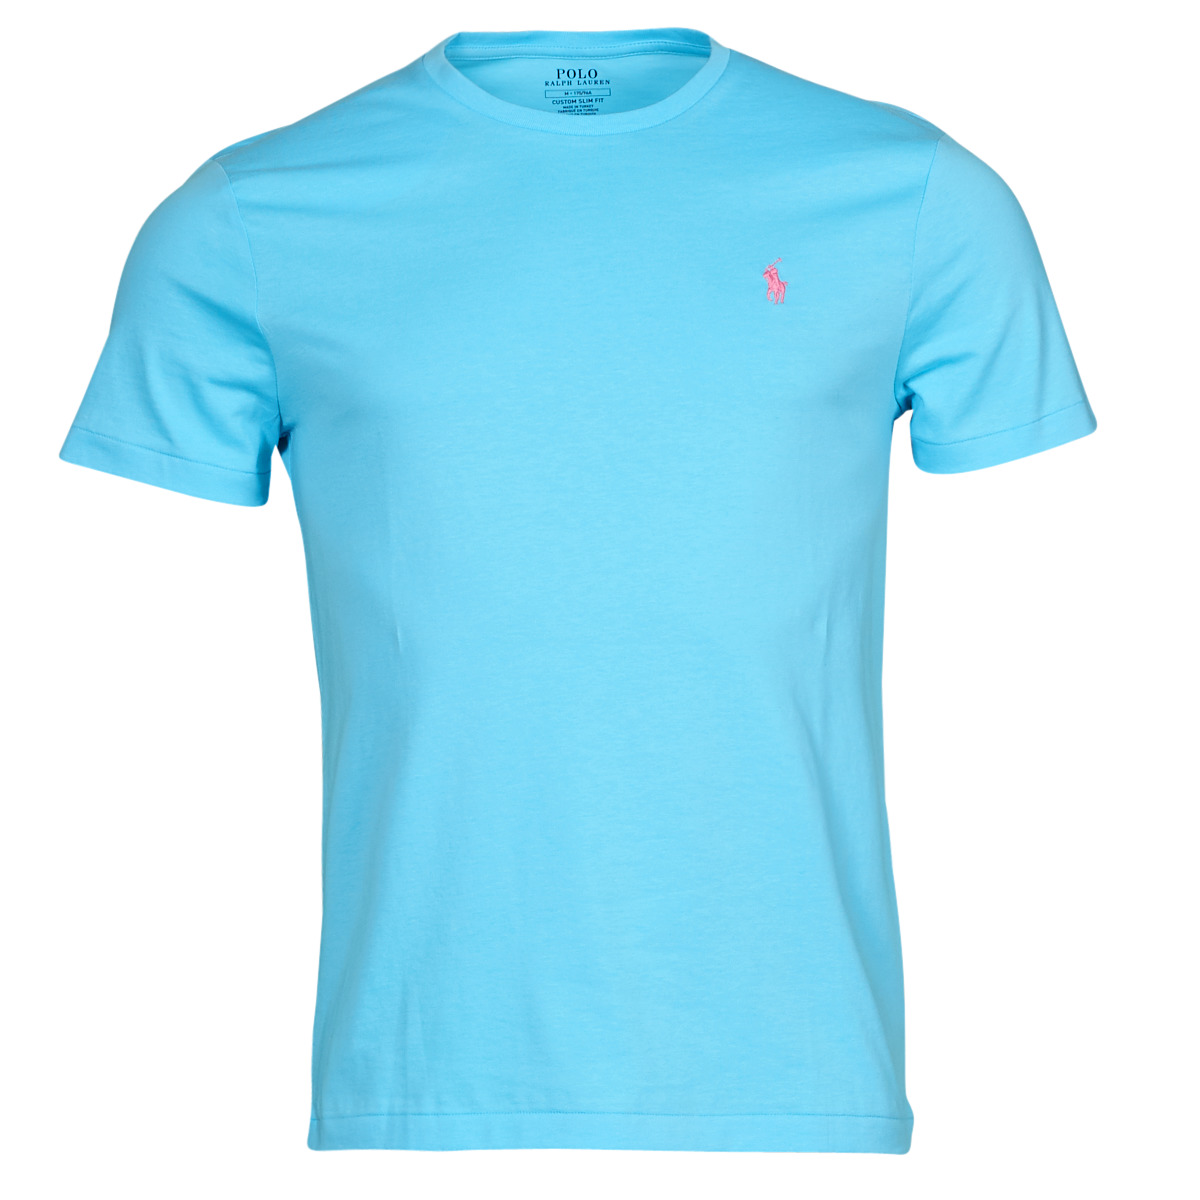 Abbigliamento Uomo T-shirt maniche corte Polo Ralph Lauren K221SC08 